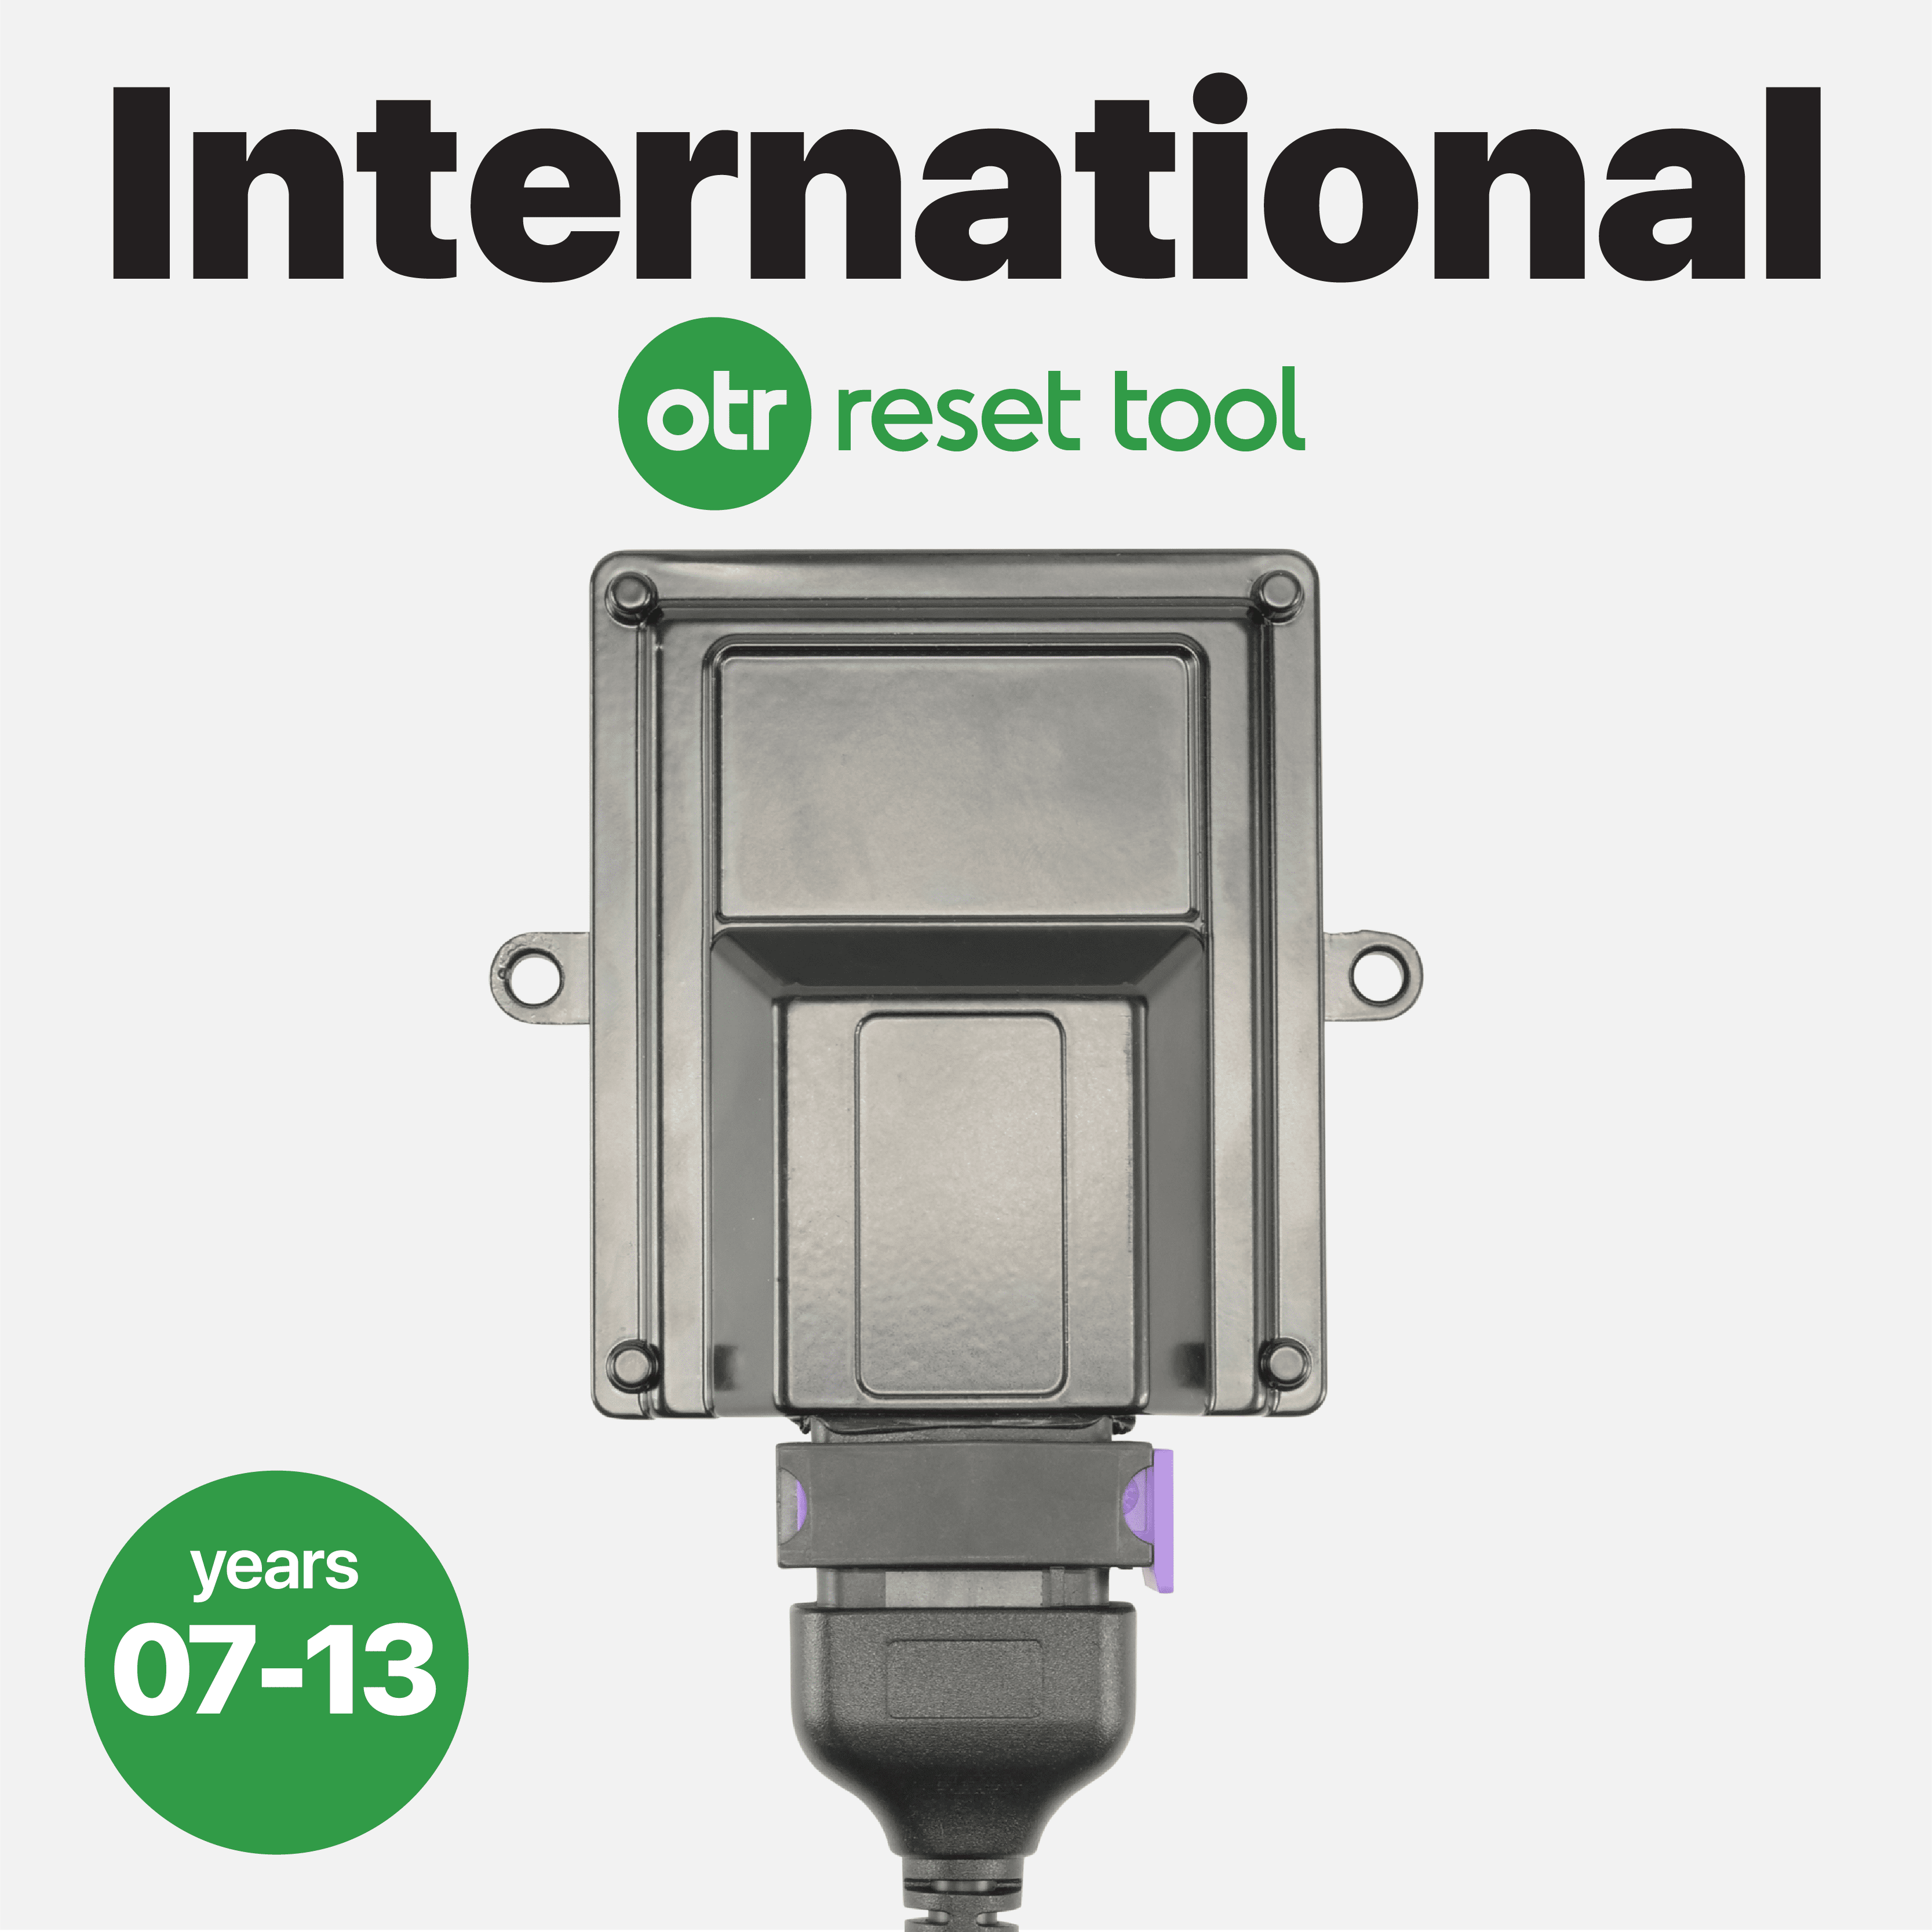 OTR Reset Tool | International